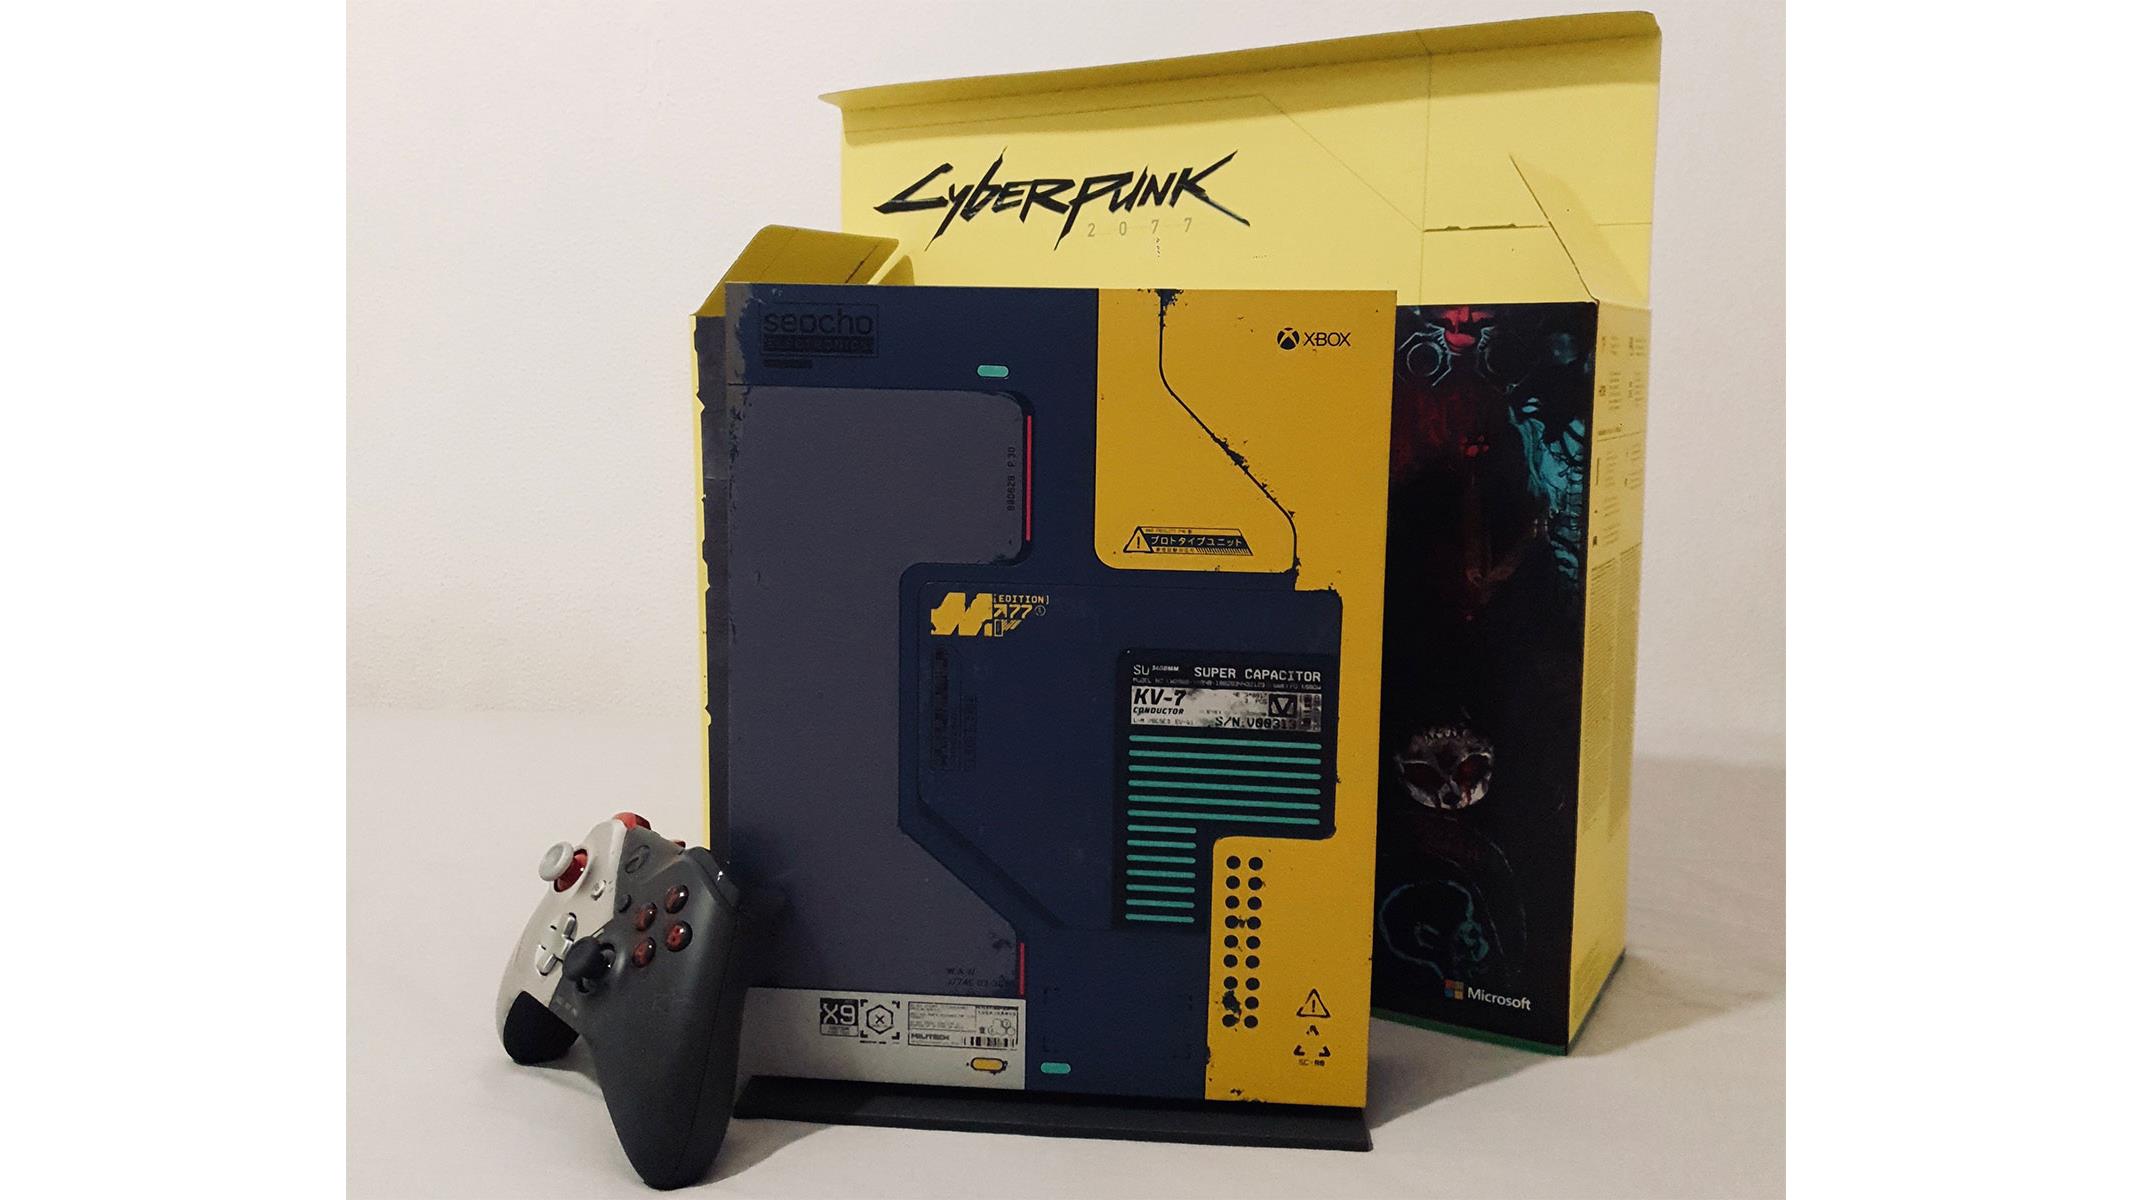 cyberpunk 2077 edition xbox one x